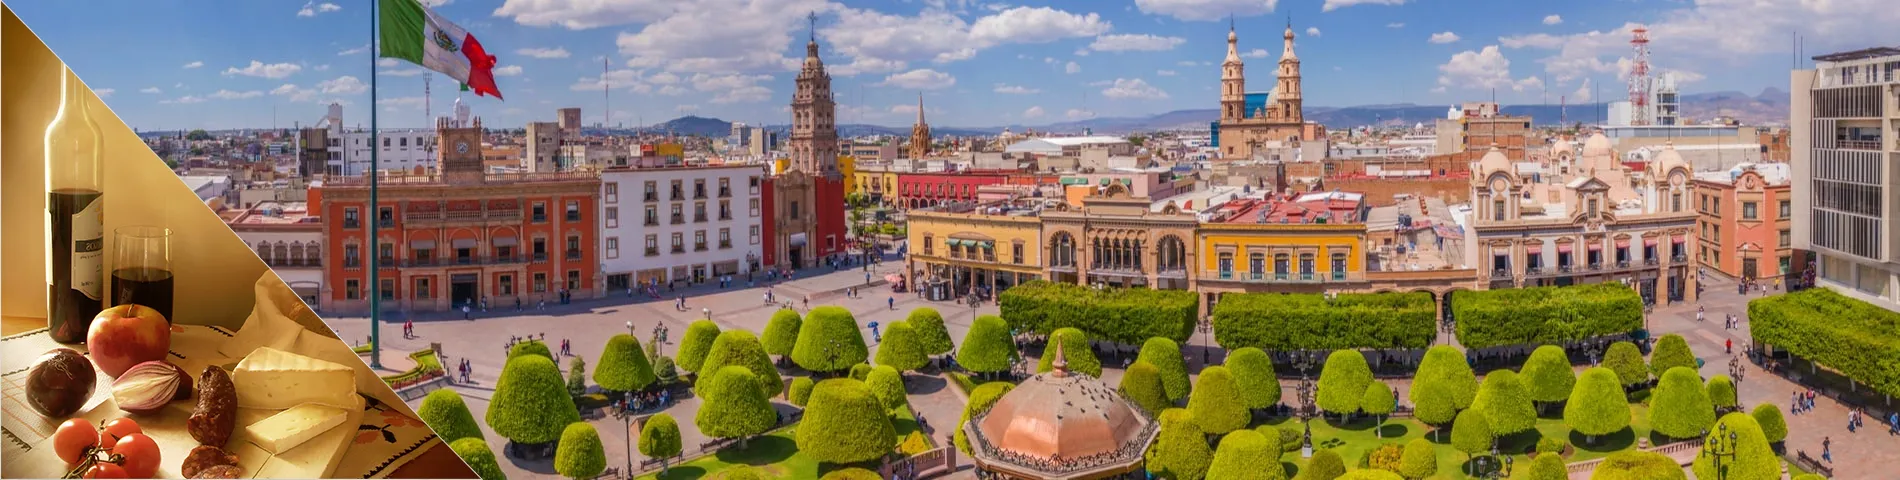 Guanajuato - Spaans & cultuur